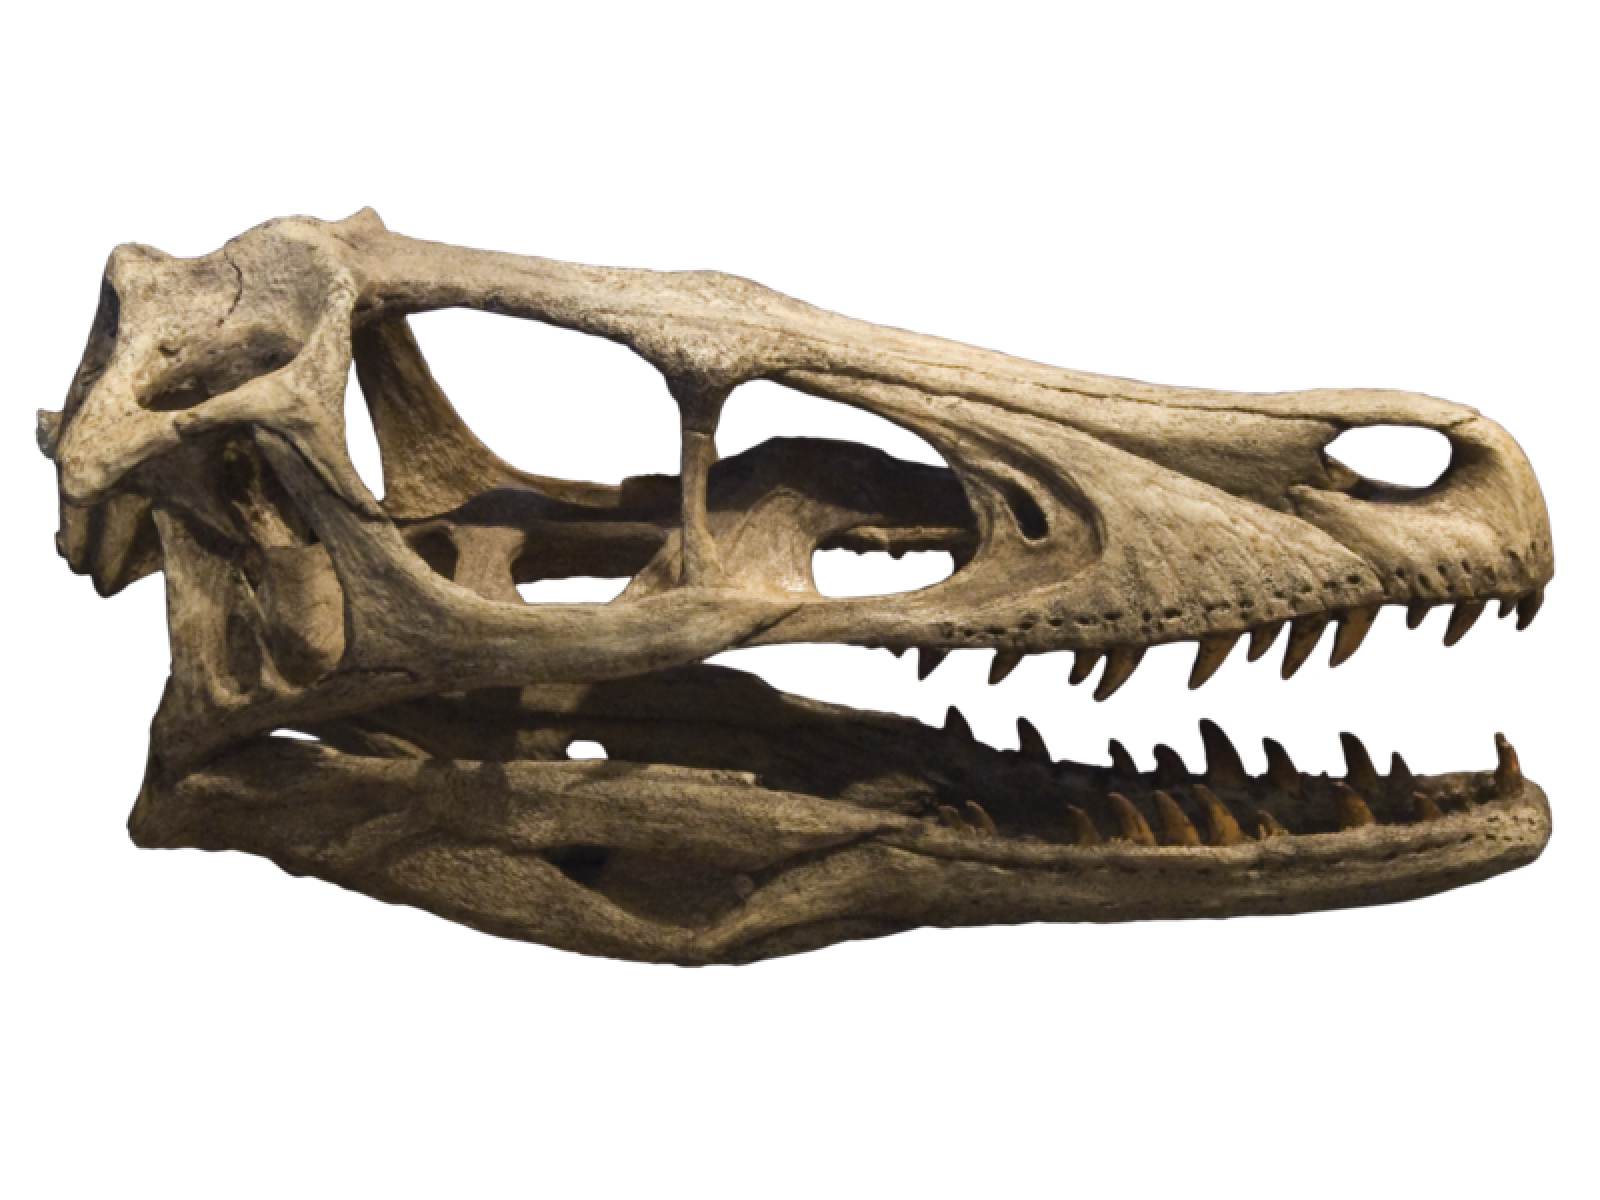 El velociraptor vivió hace 100 millones de años en época del Jurasico